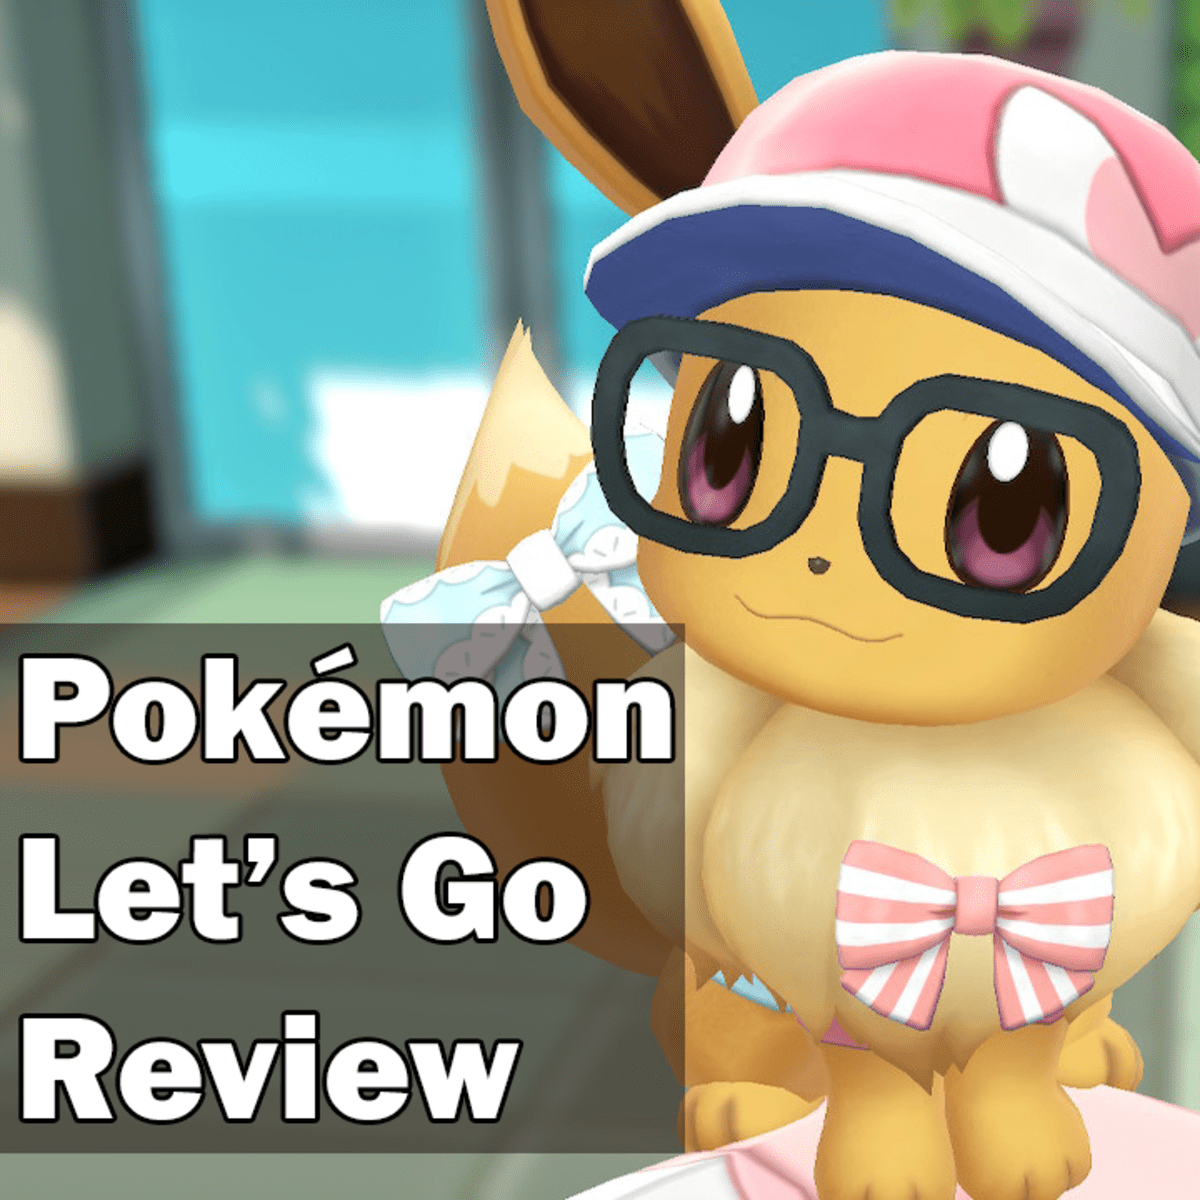 Review Pokémon Let's Go